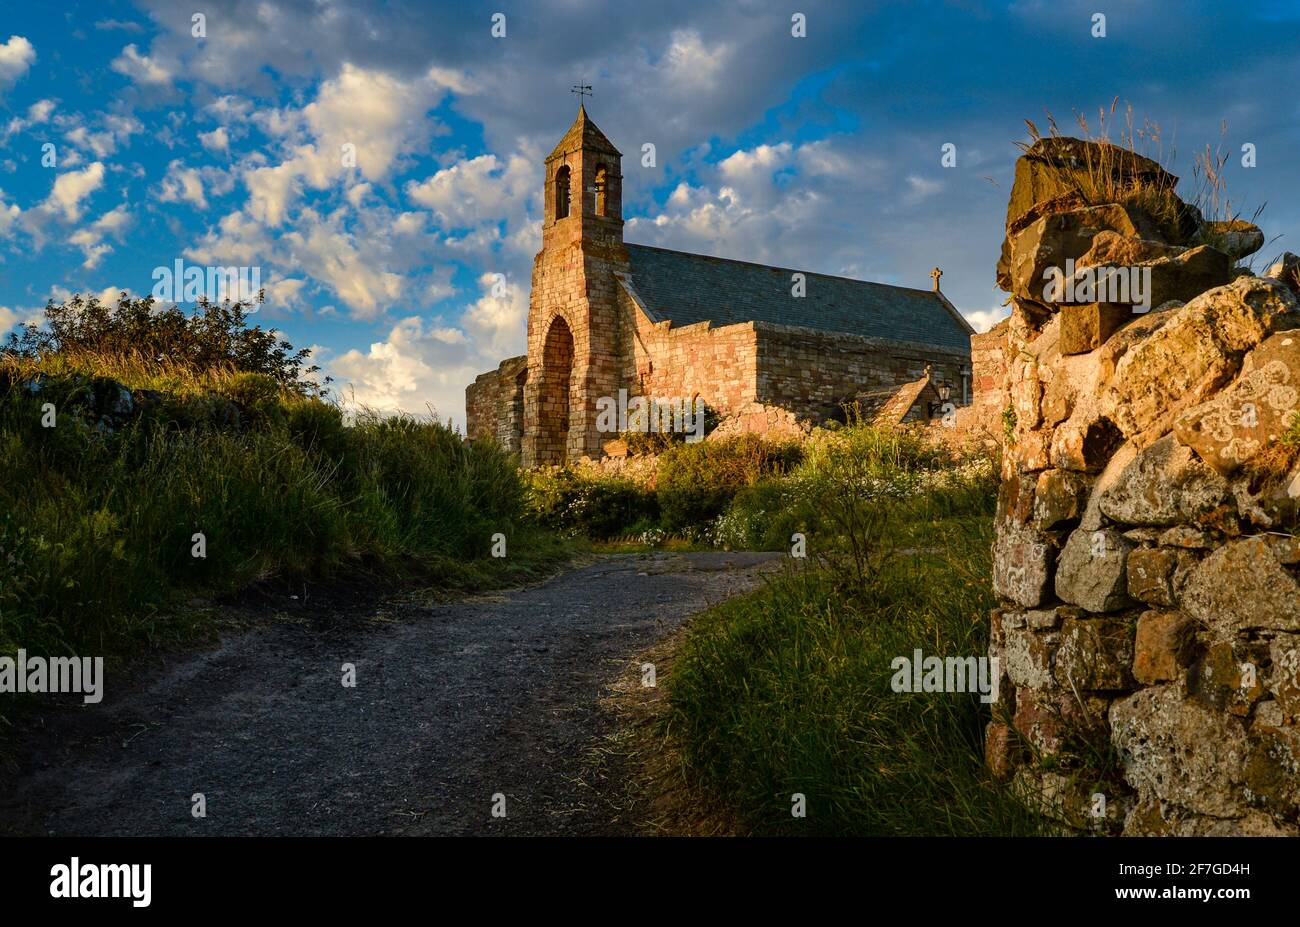 St Mary's l'église paroissiale de l'île Sainte de Lindisfarne, Northumberland, Angleterre, Royaume-Uni Banque D'Images